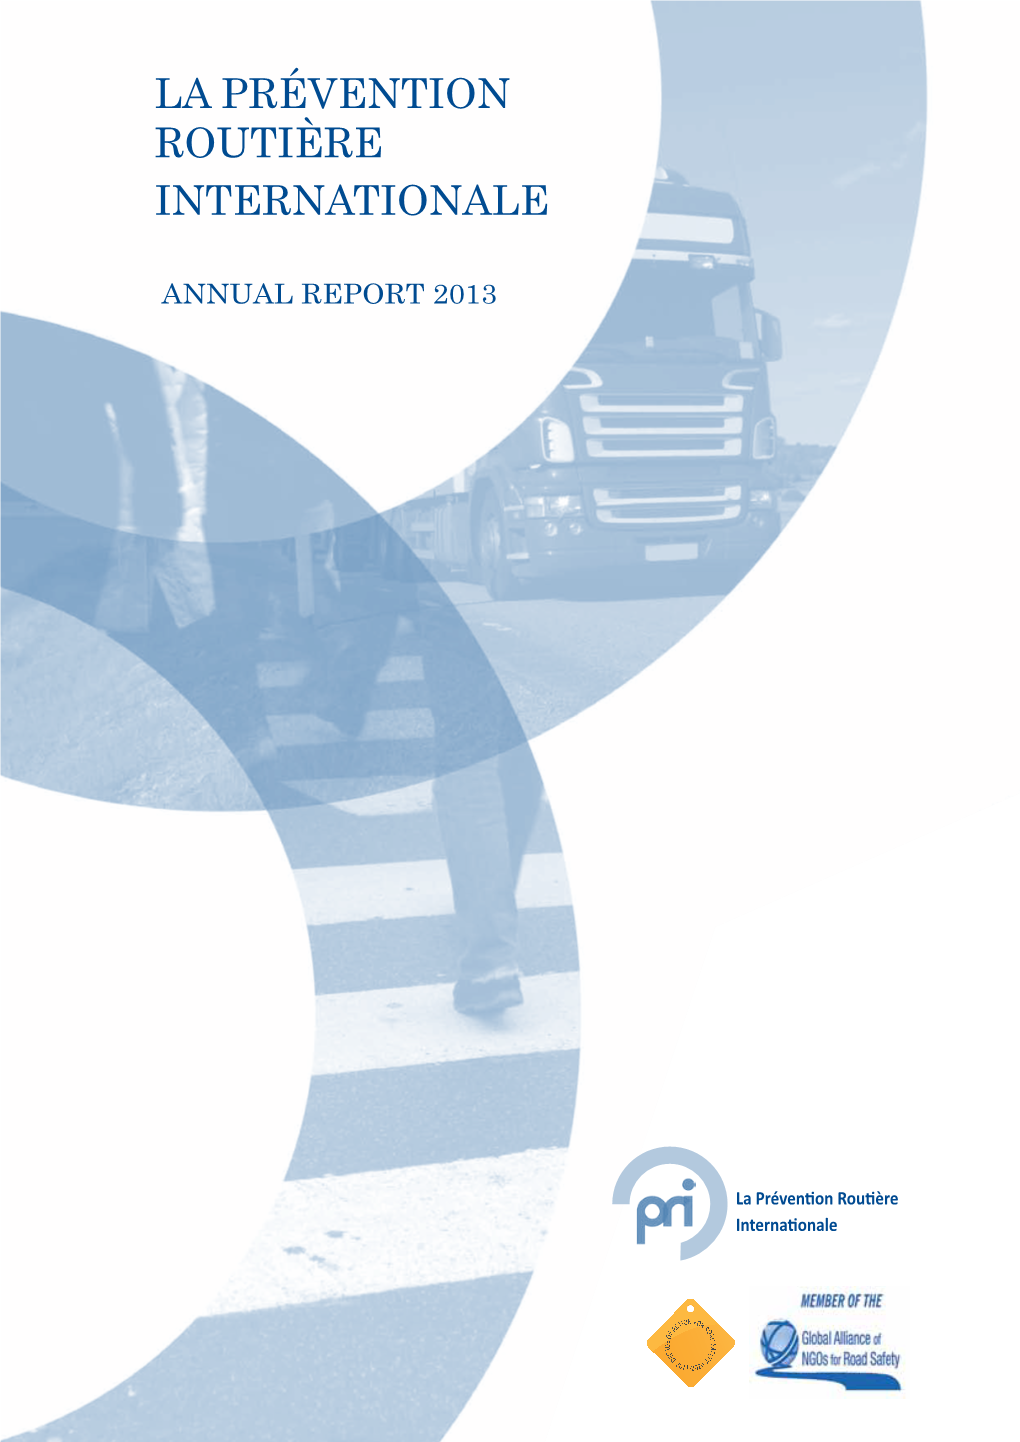 PRI ANNUAL REPORT 2013.Pdf